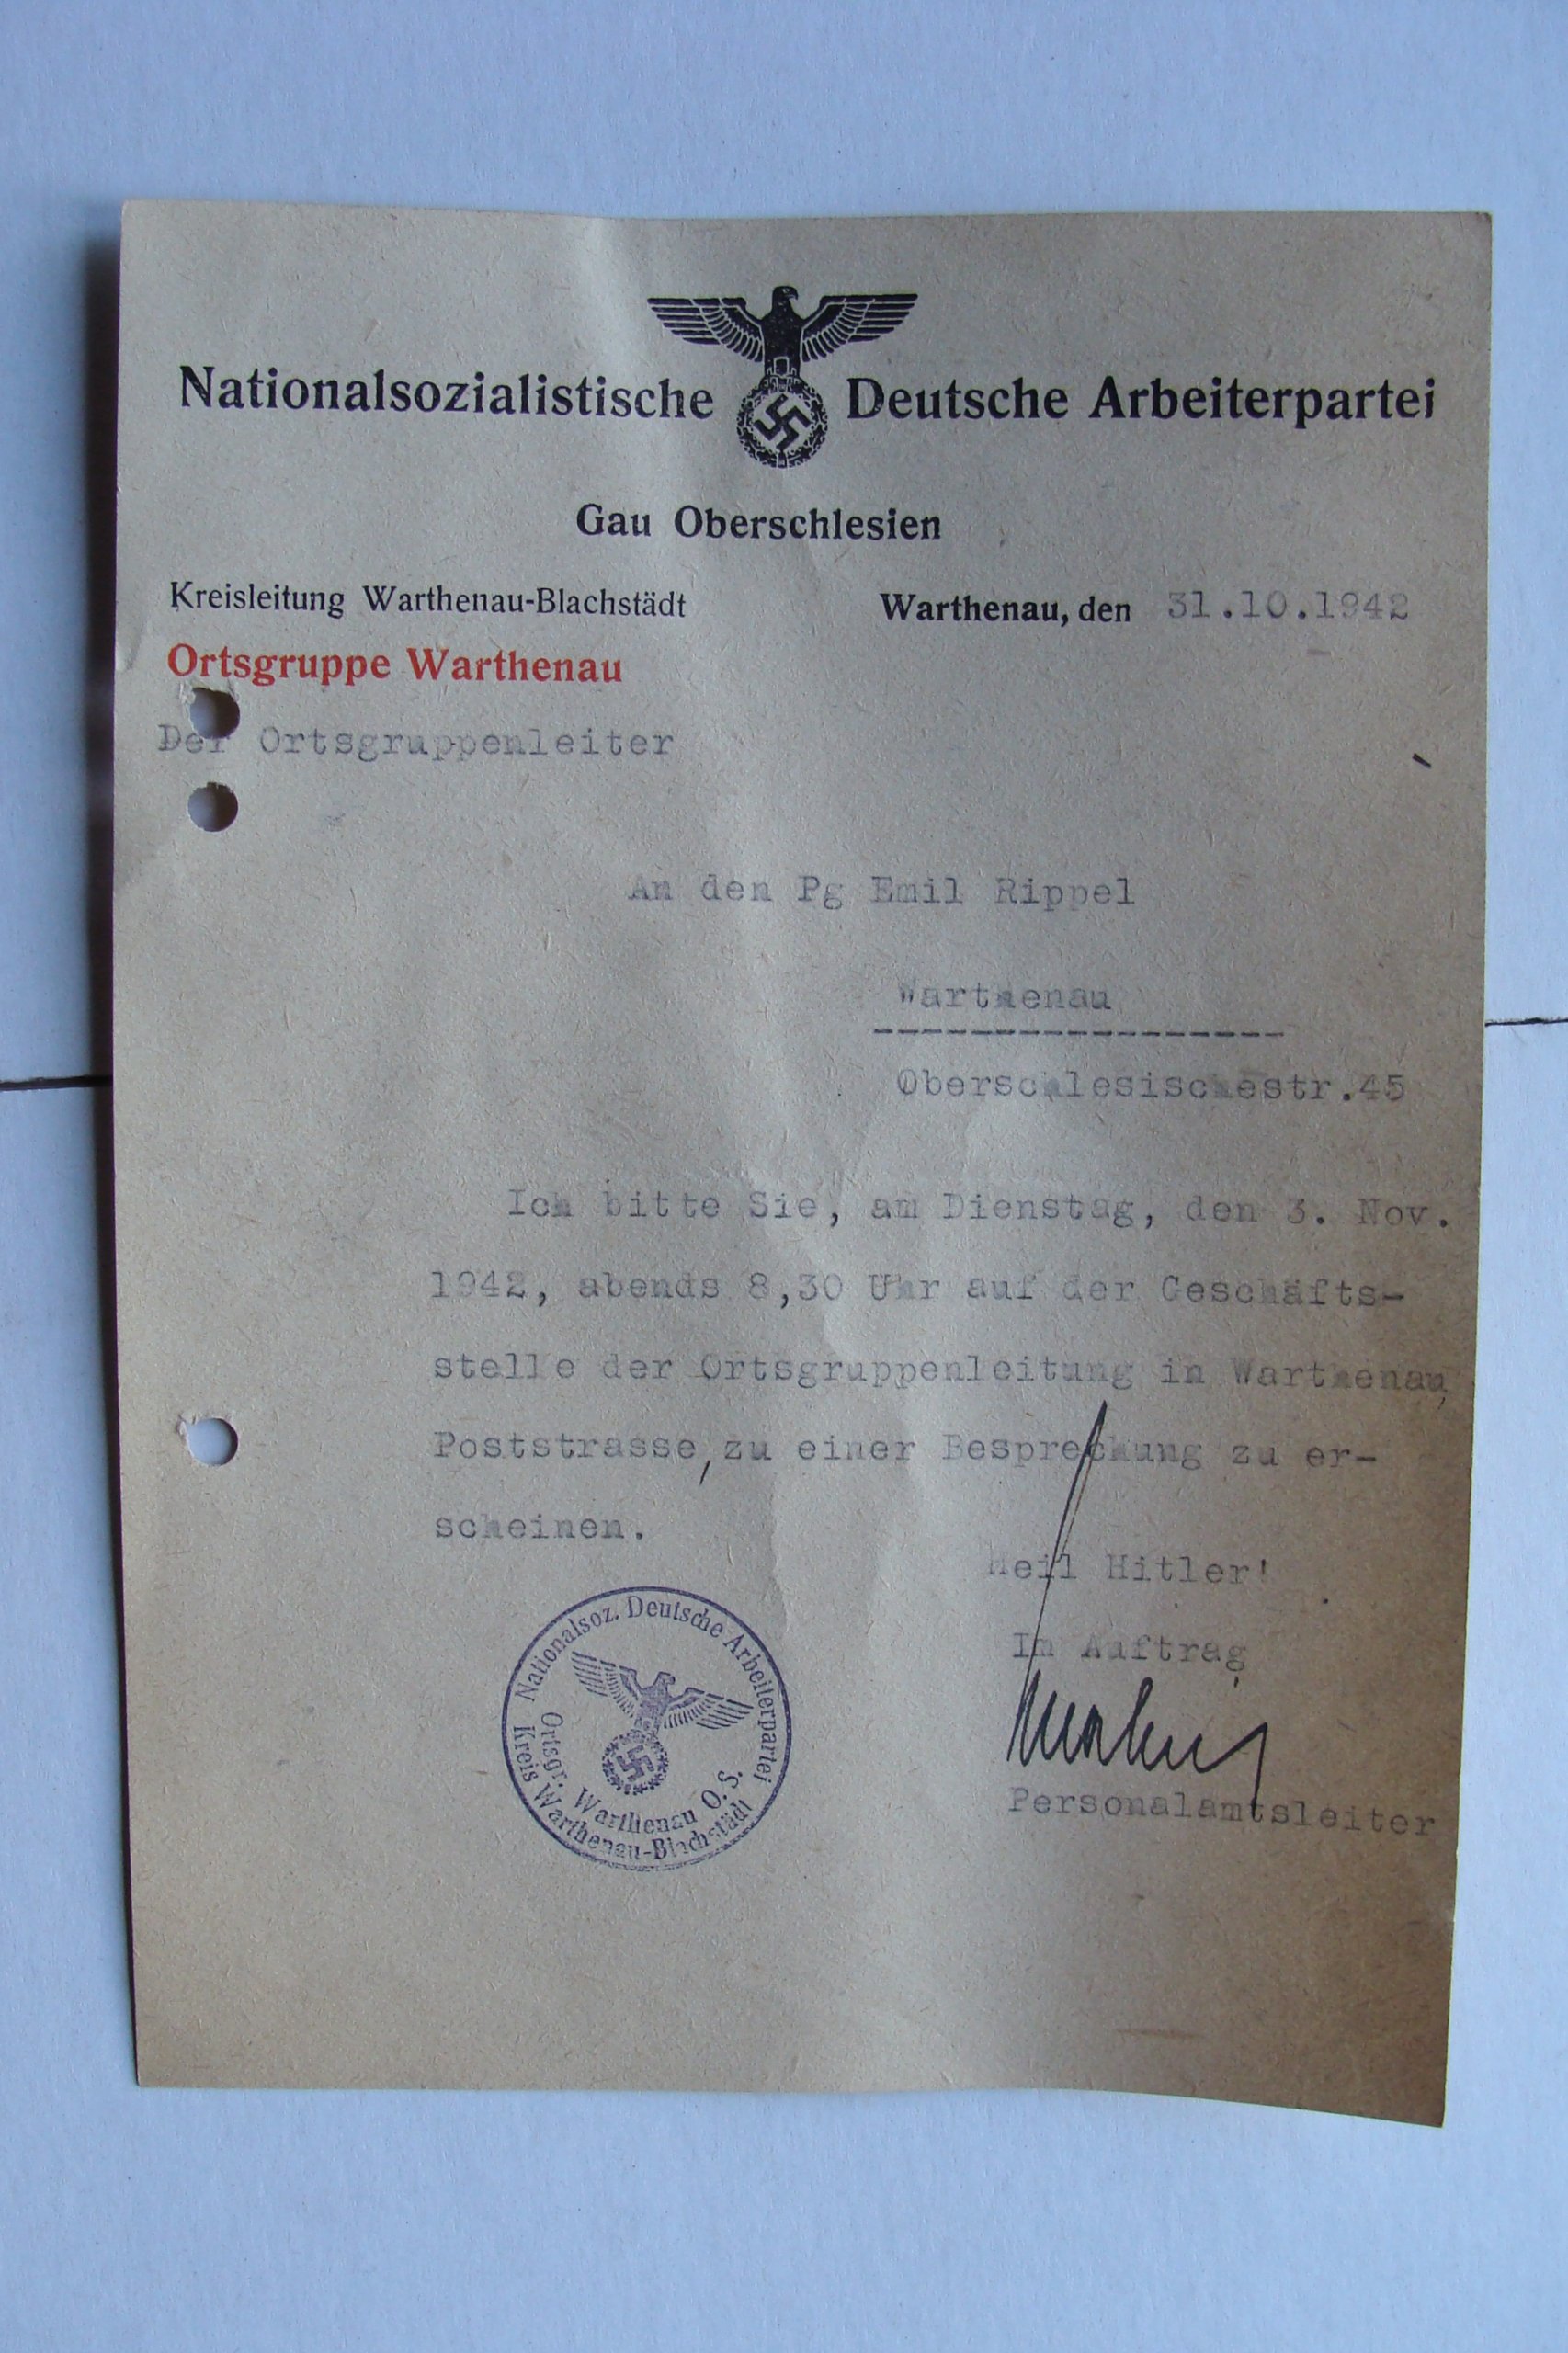 WARTHENAU ZAWIERCIE stary DOKUMENT NSDAP 1942 7027832640 oficjalne archiwum Allegro